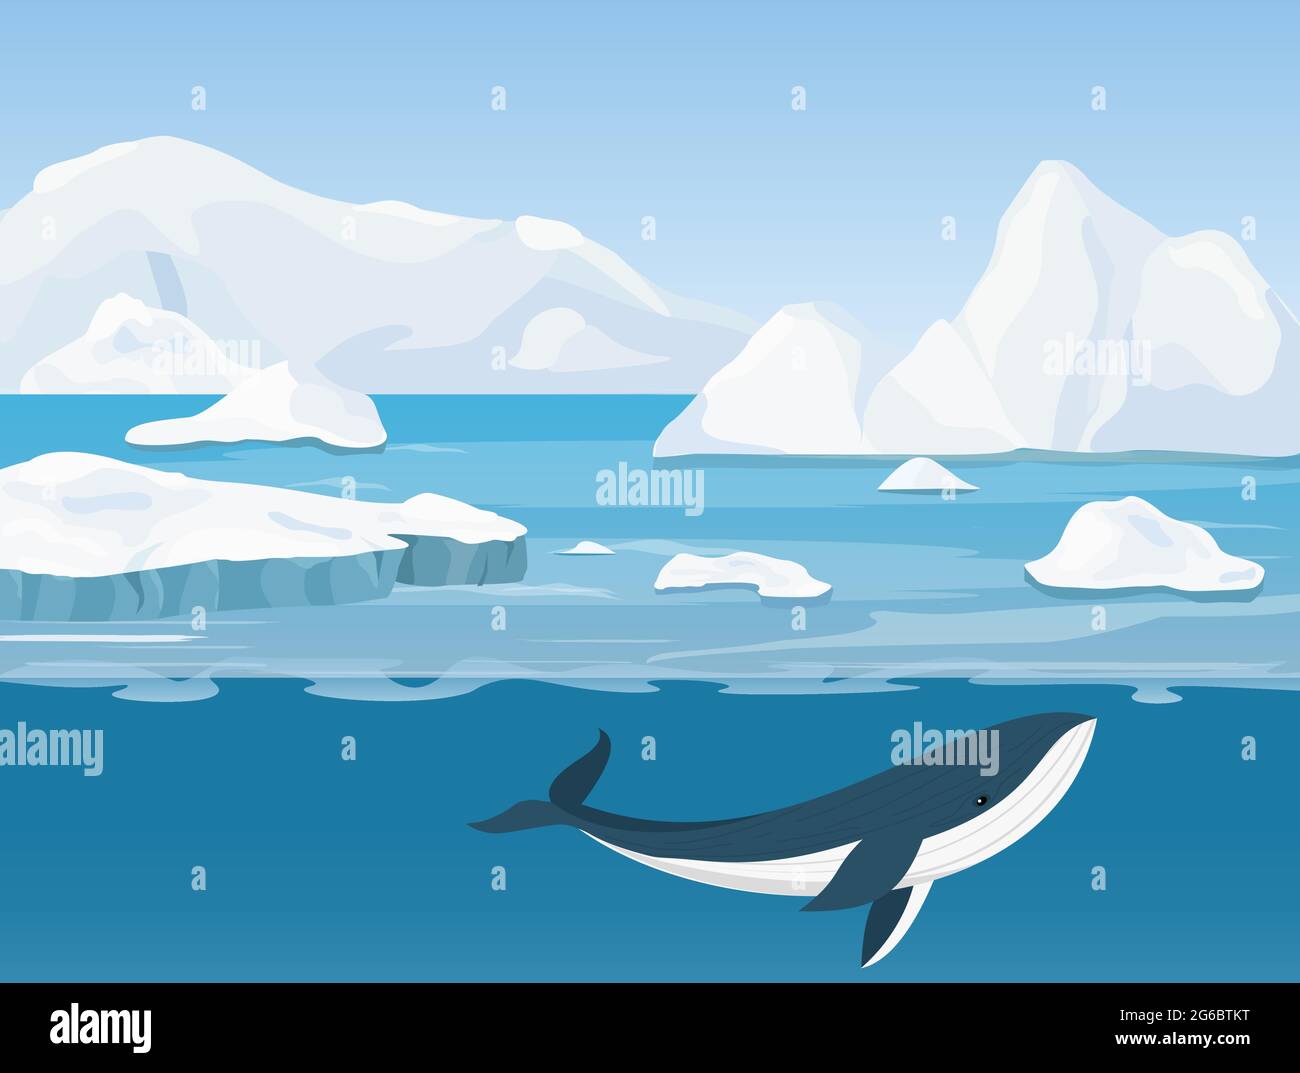 Illustrazione vettoriale del bellissimo paesaggio artico della vita settentrionale e antartica. Iceberg in oceano e mondo sottomarino con balena in cartoon piano Illustrazione Vettoriale